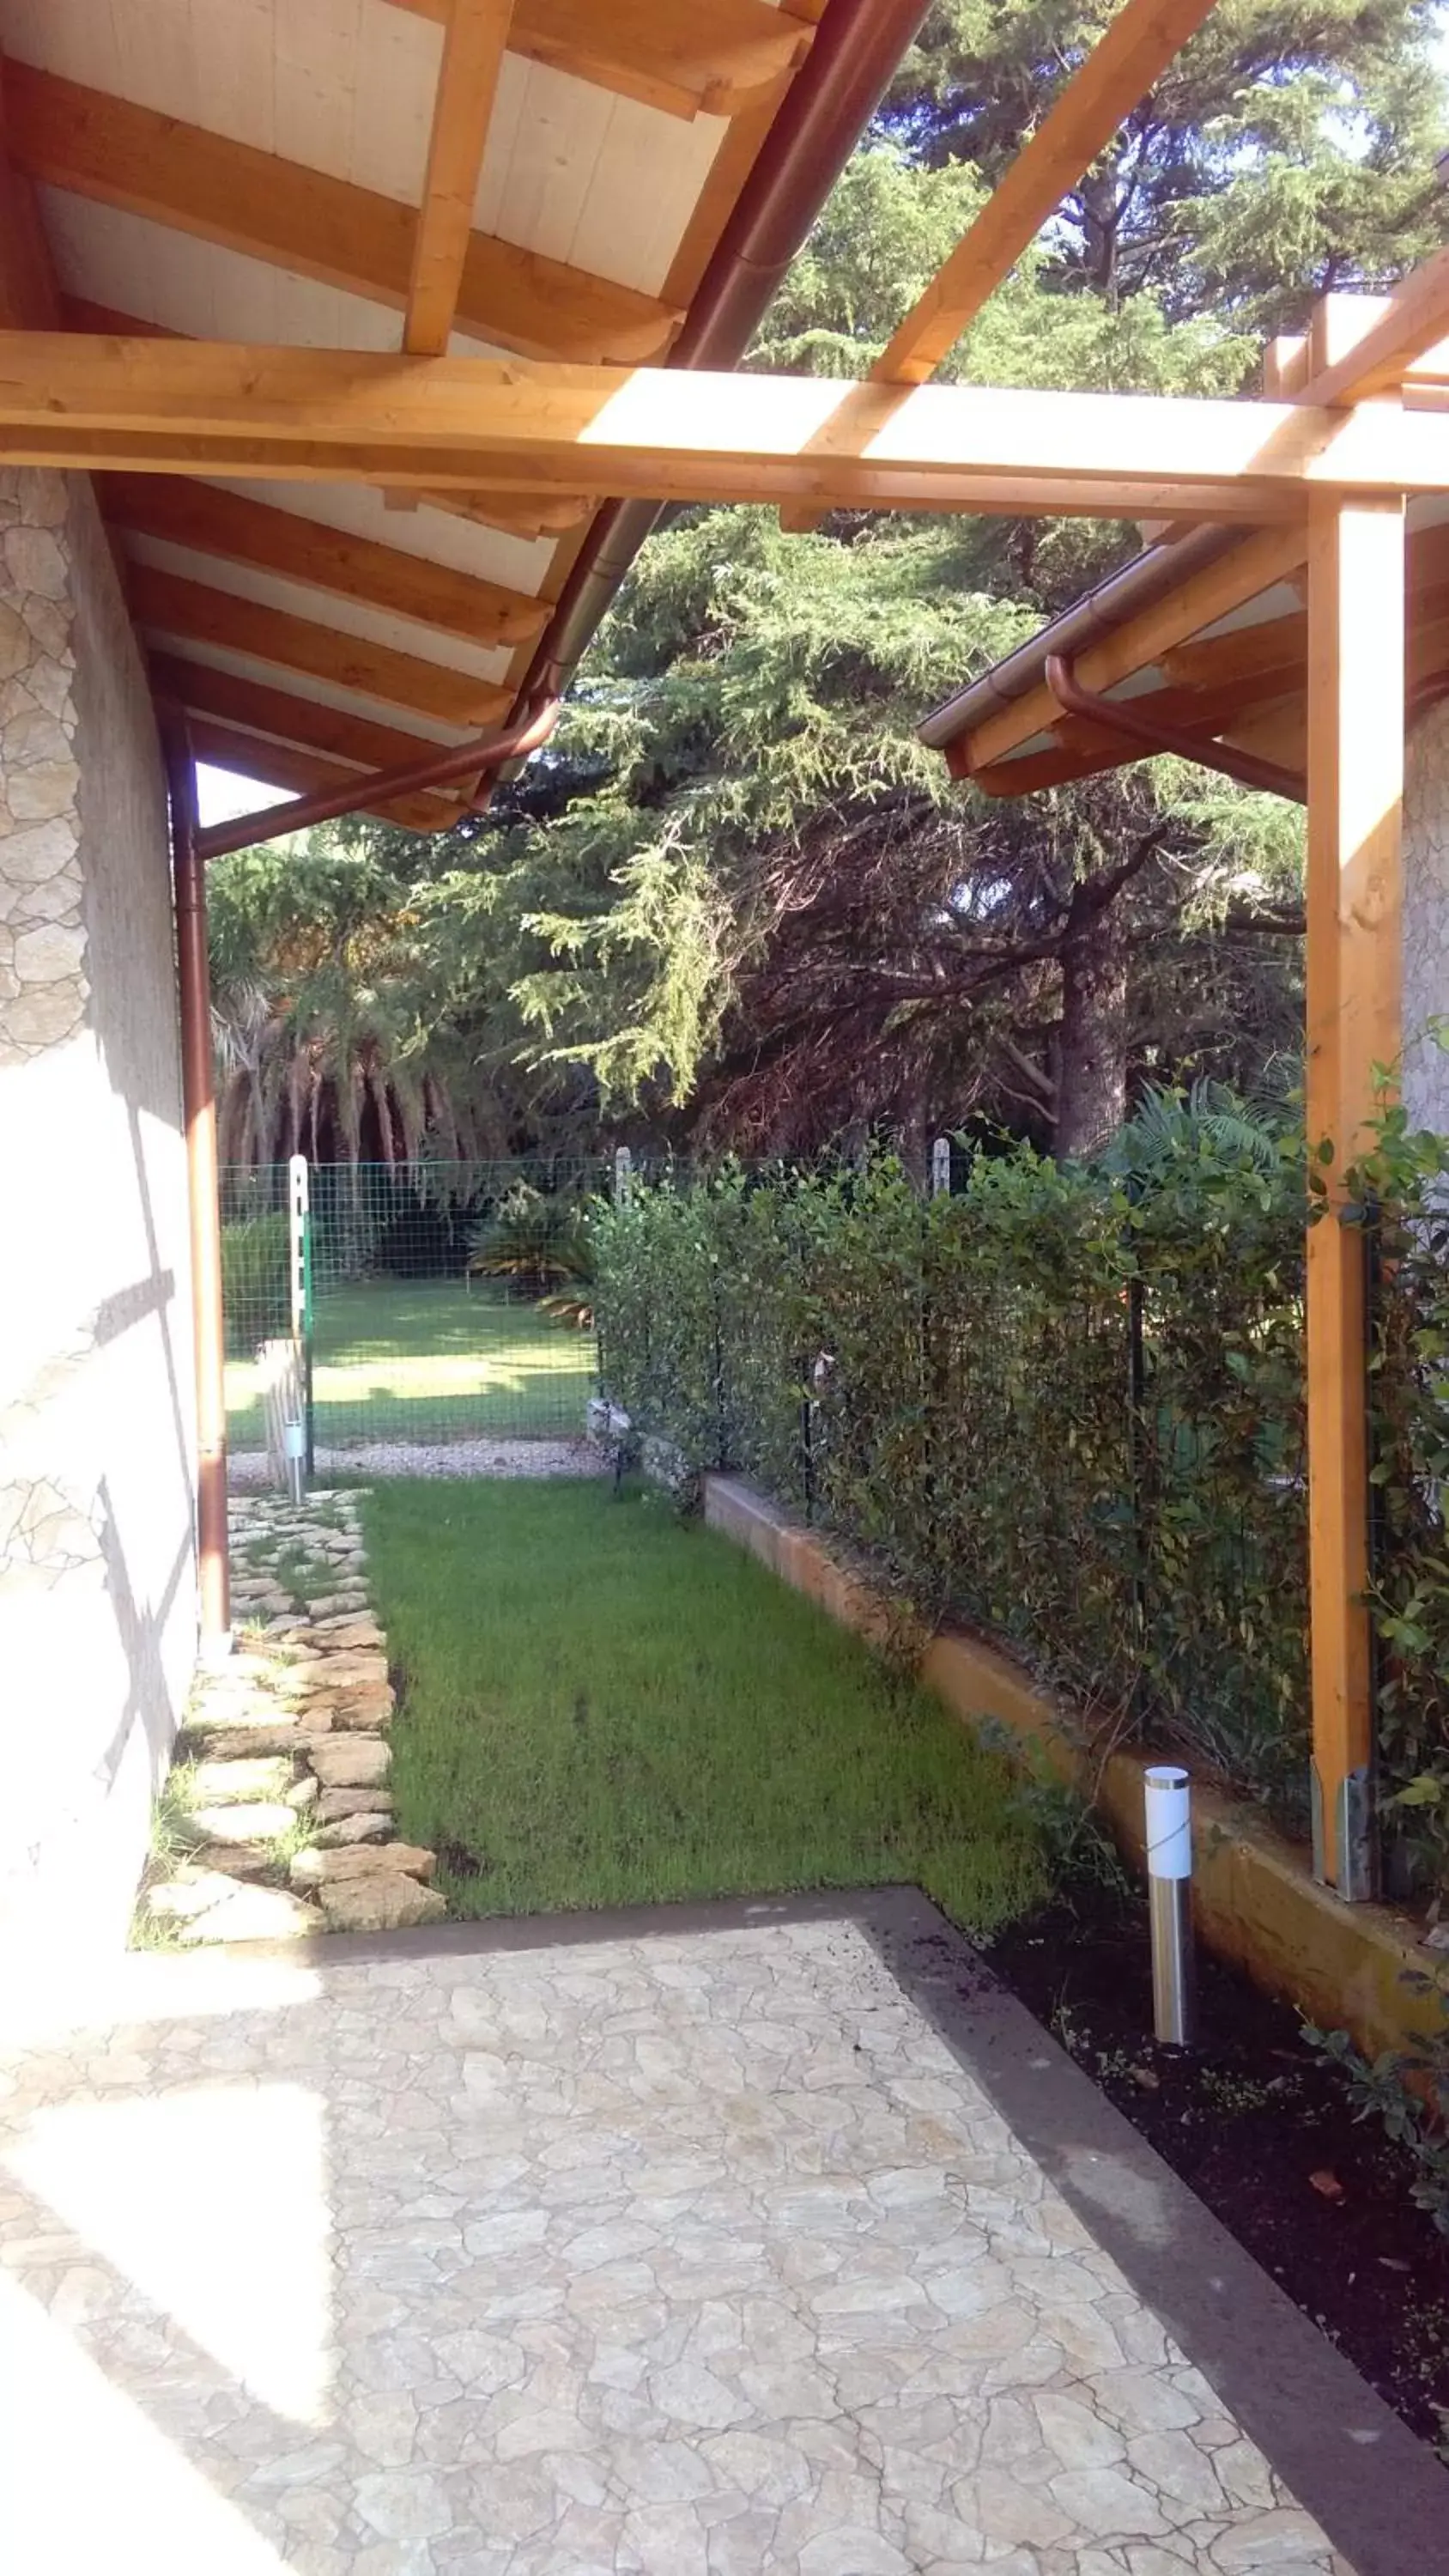 Property building, Patio/Outdoor Area in Alloggio Turistico Castel di Leva